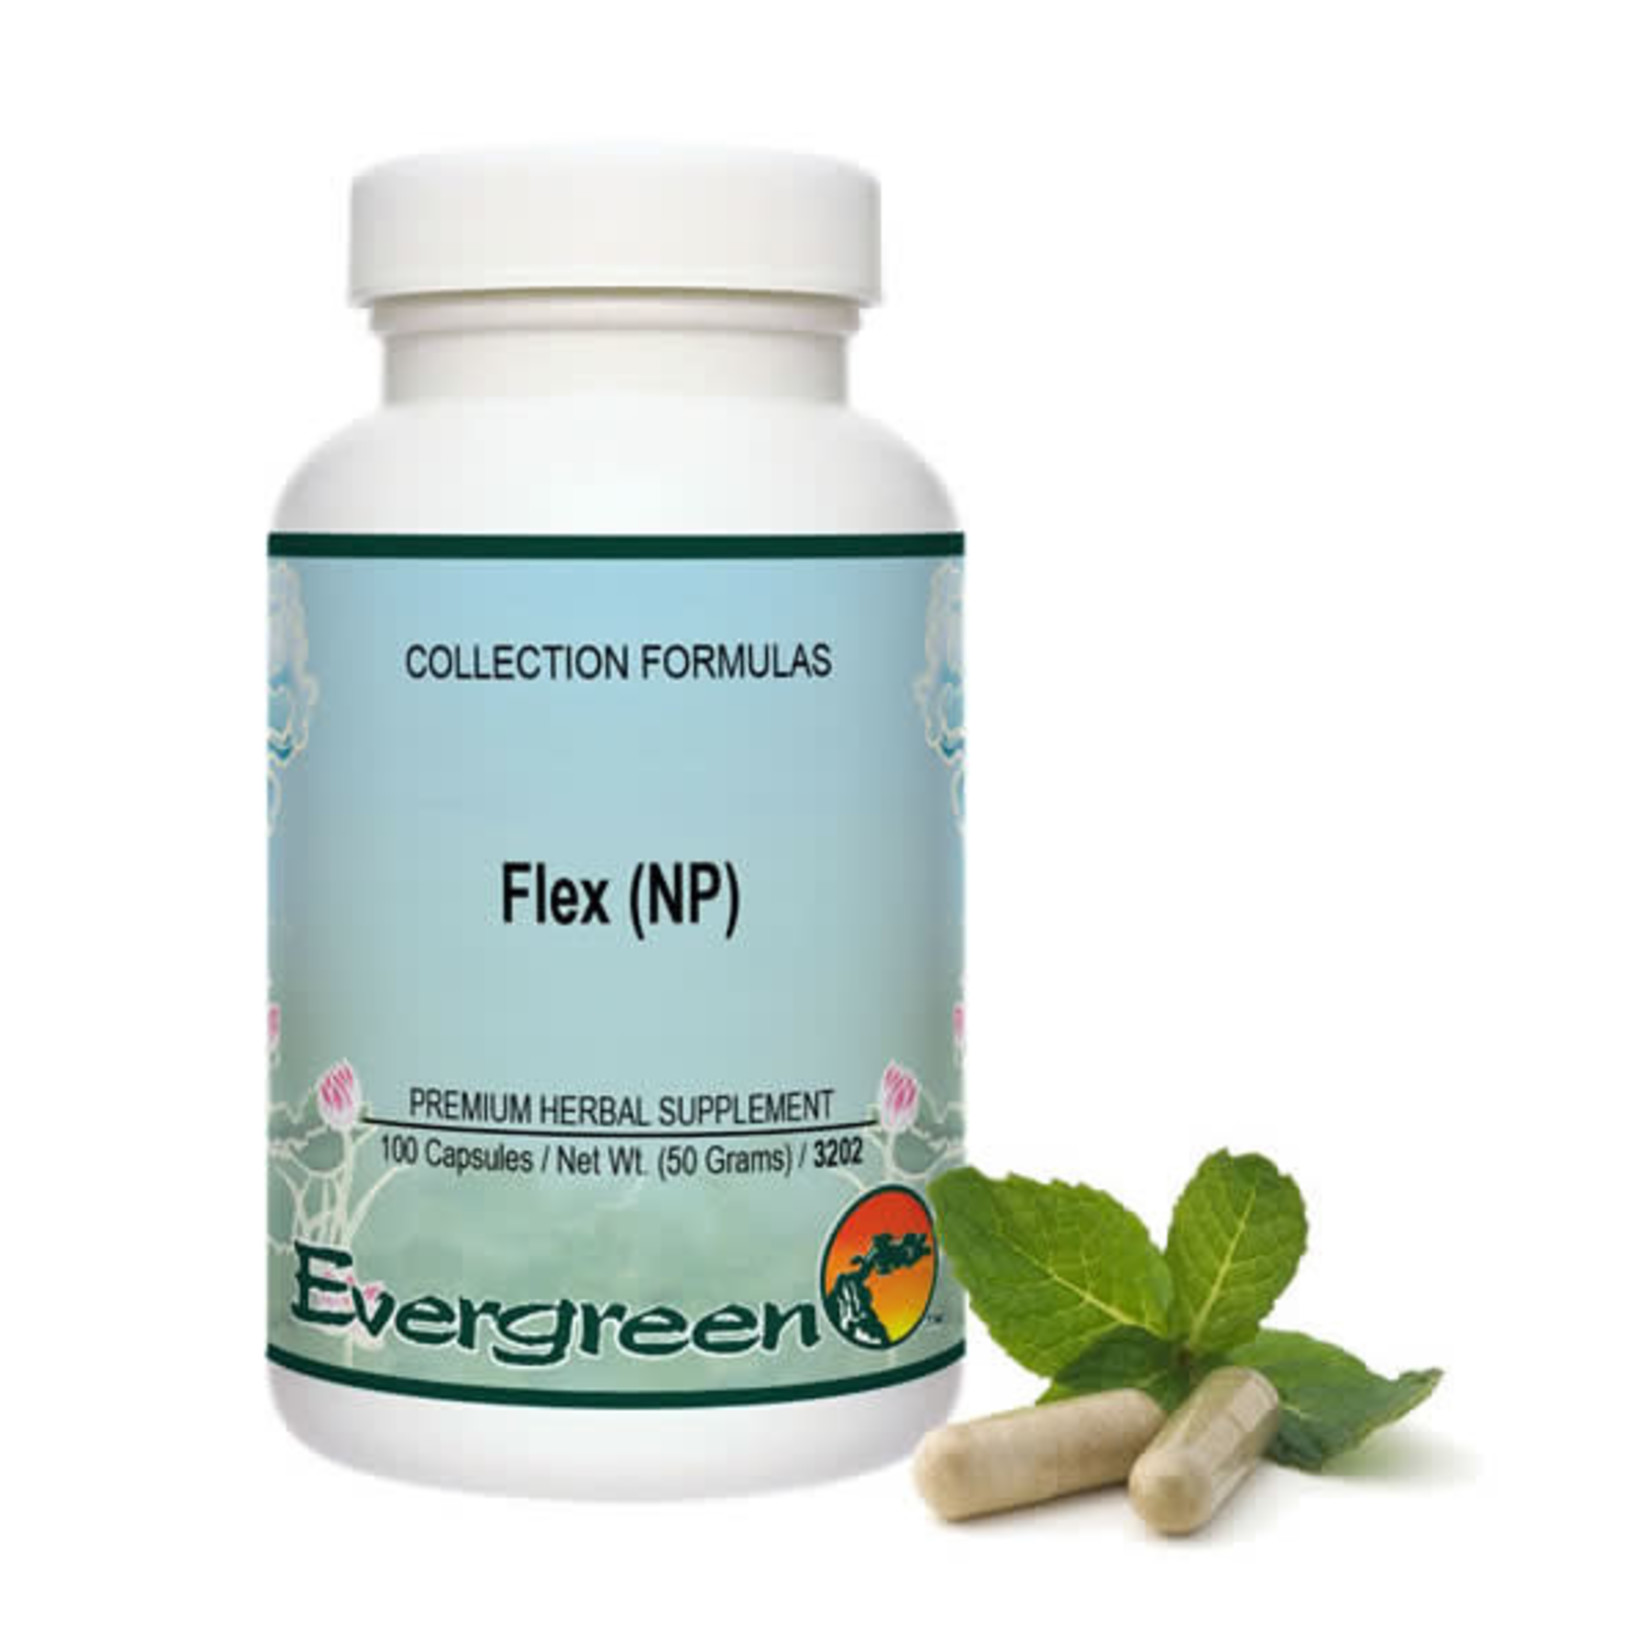 Flex (NP) (Evergreen Herbs)